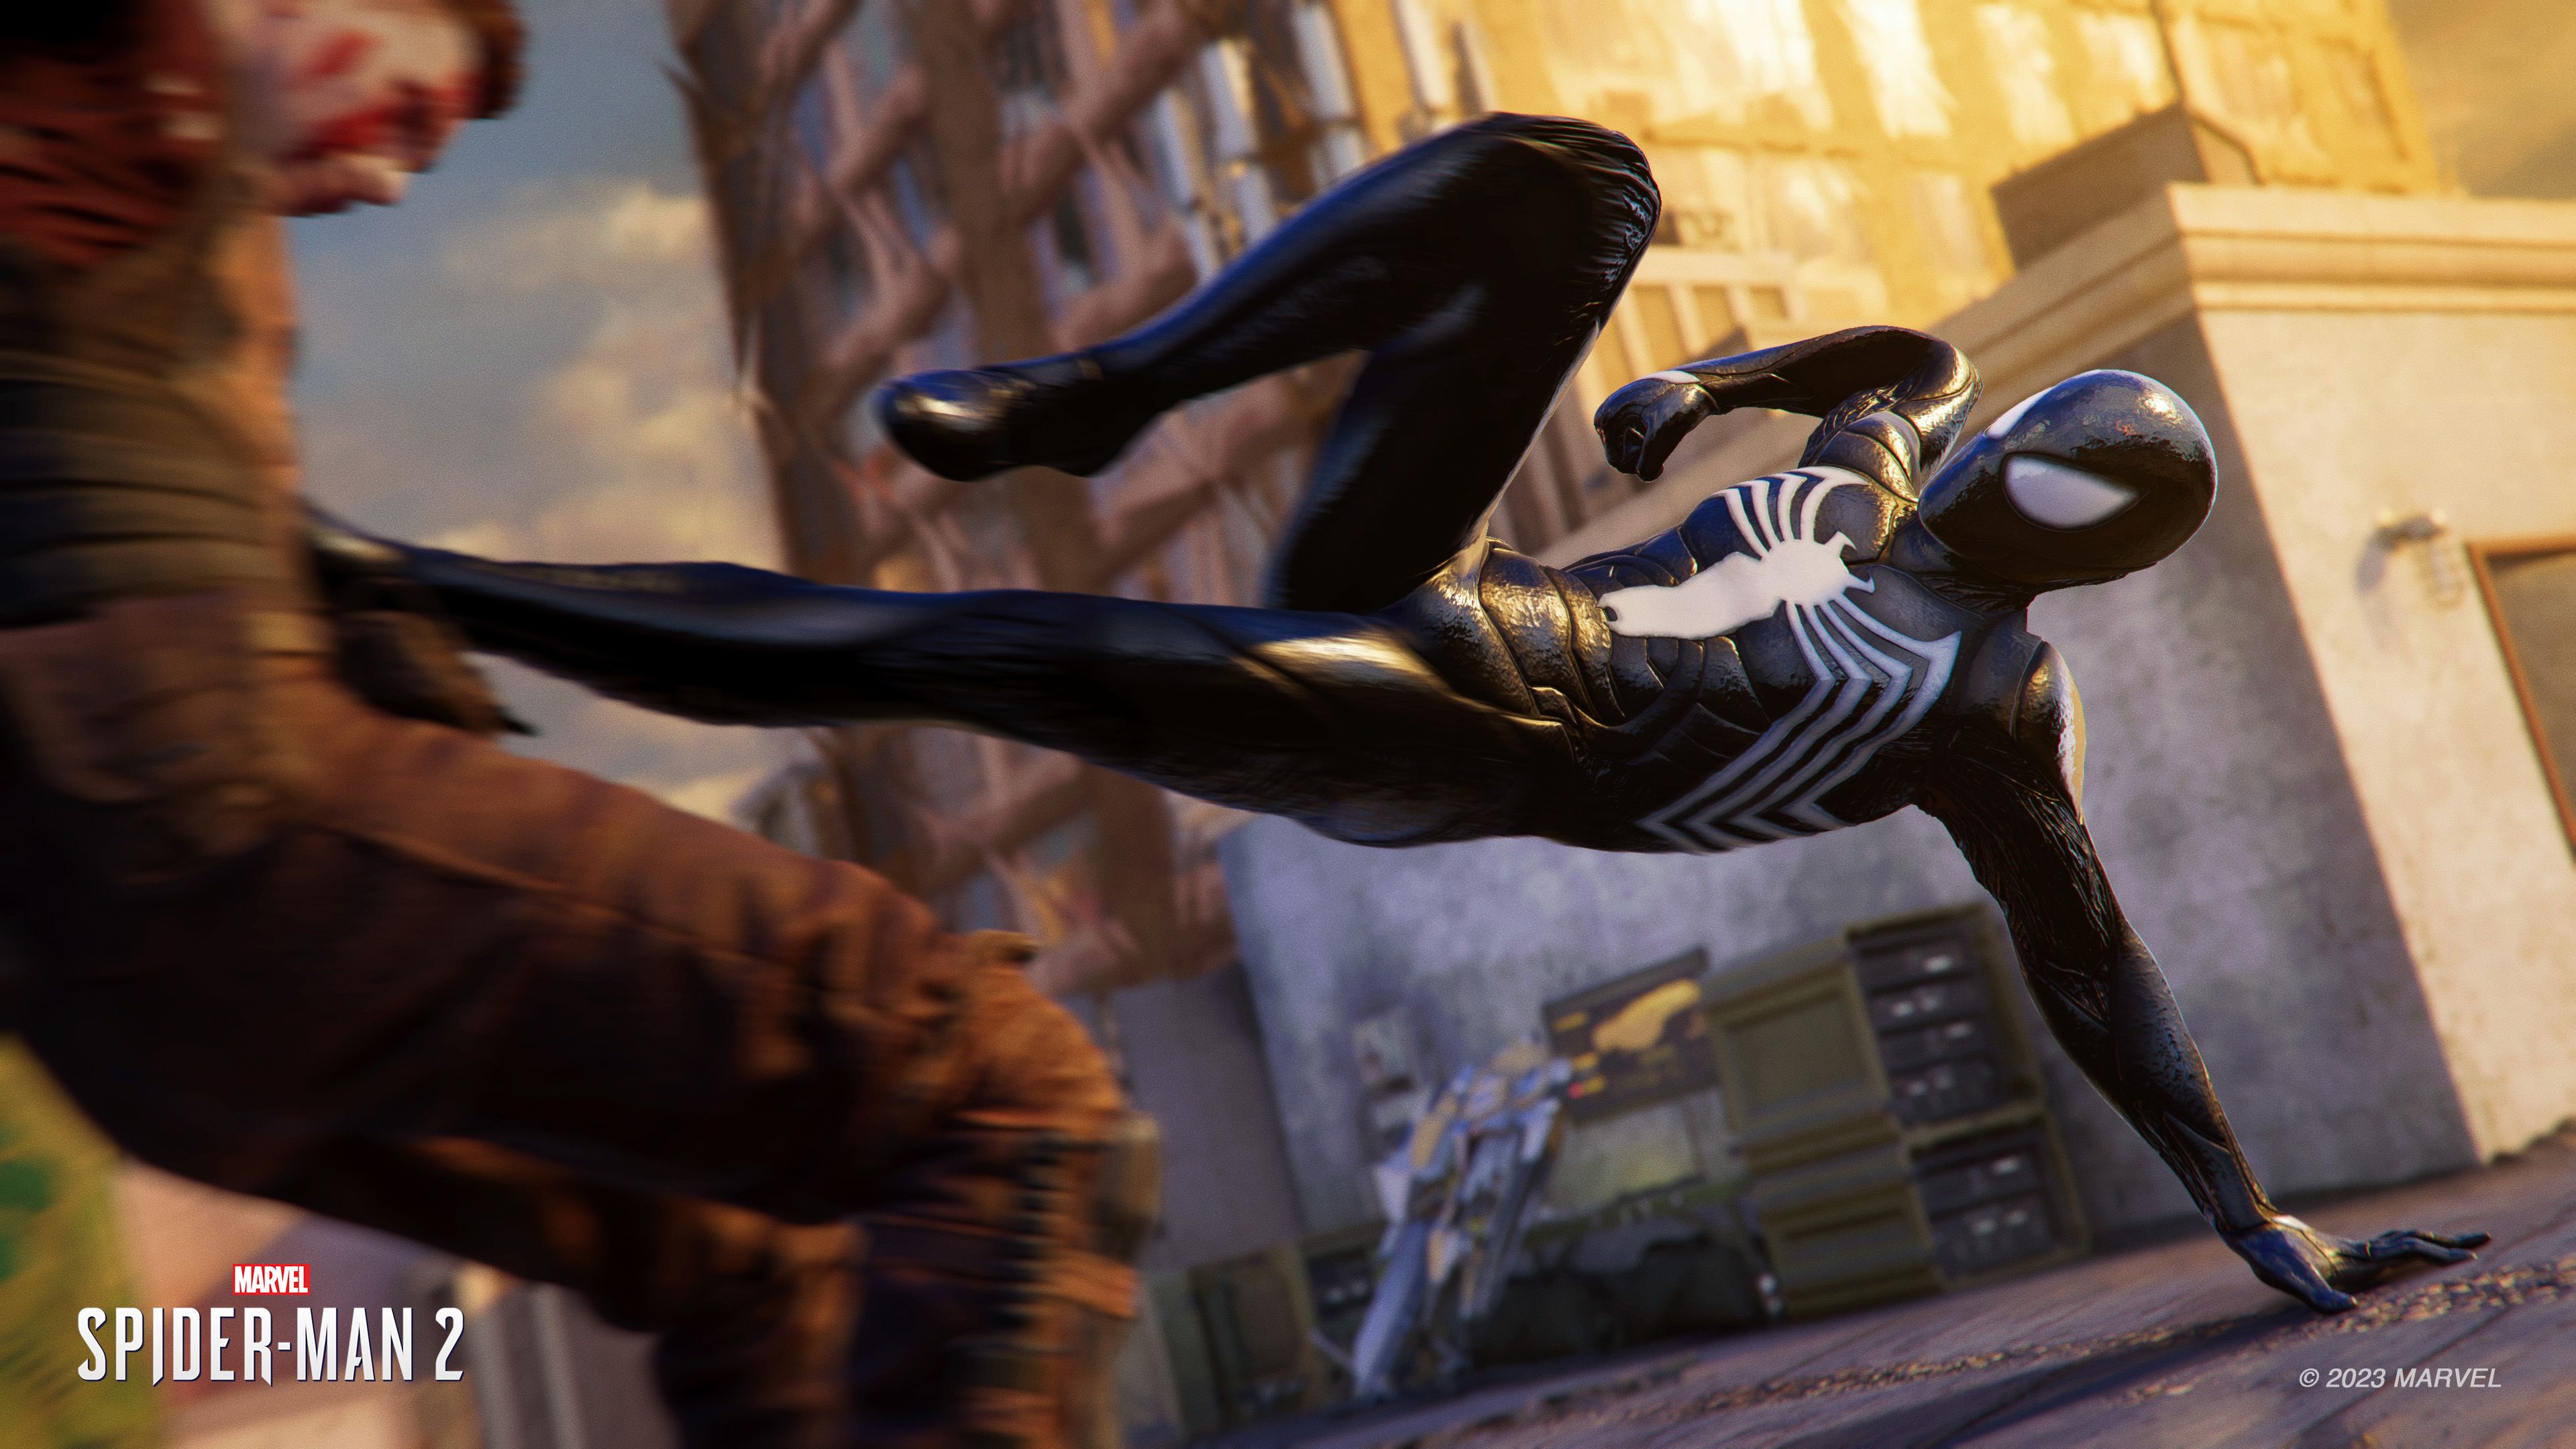 Los especuladores han vuelto, y ahora quieren aprovecharse del interés por  Spider-Man 2 con precios muy elevados en el mando y la carcasa de PS5 -  Marvel's Spider-Man 2 - 3DJuegos